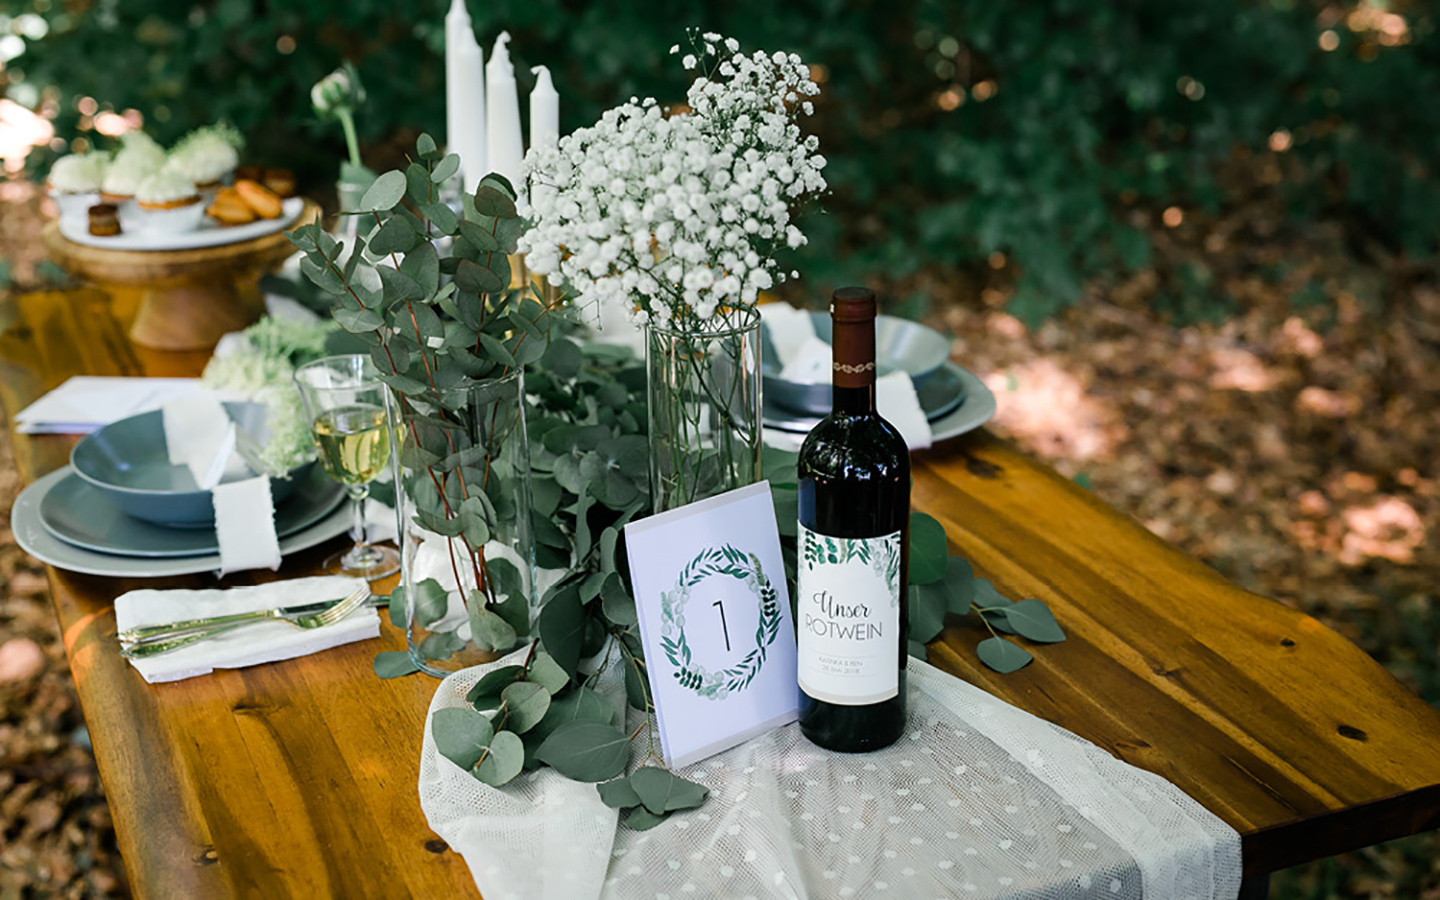 Tischdeko Hochzeit: Ein Hochzeitstisch im Greenery Look: Eukalyptus und Schleierkraut auf der rustikalen Tafel geben ein harmonisches Bild.